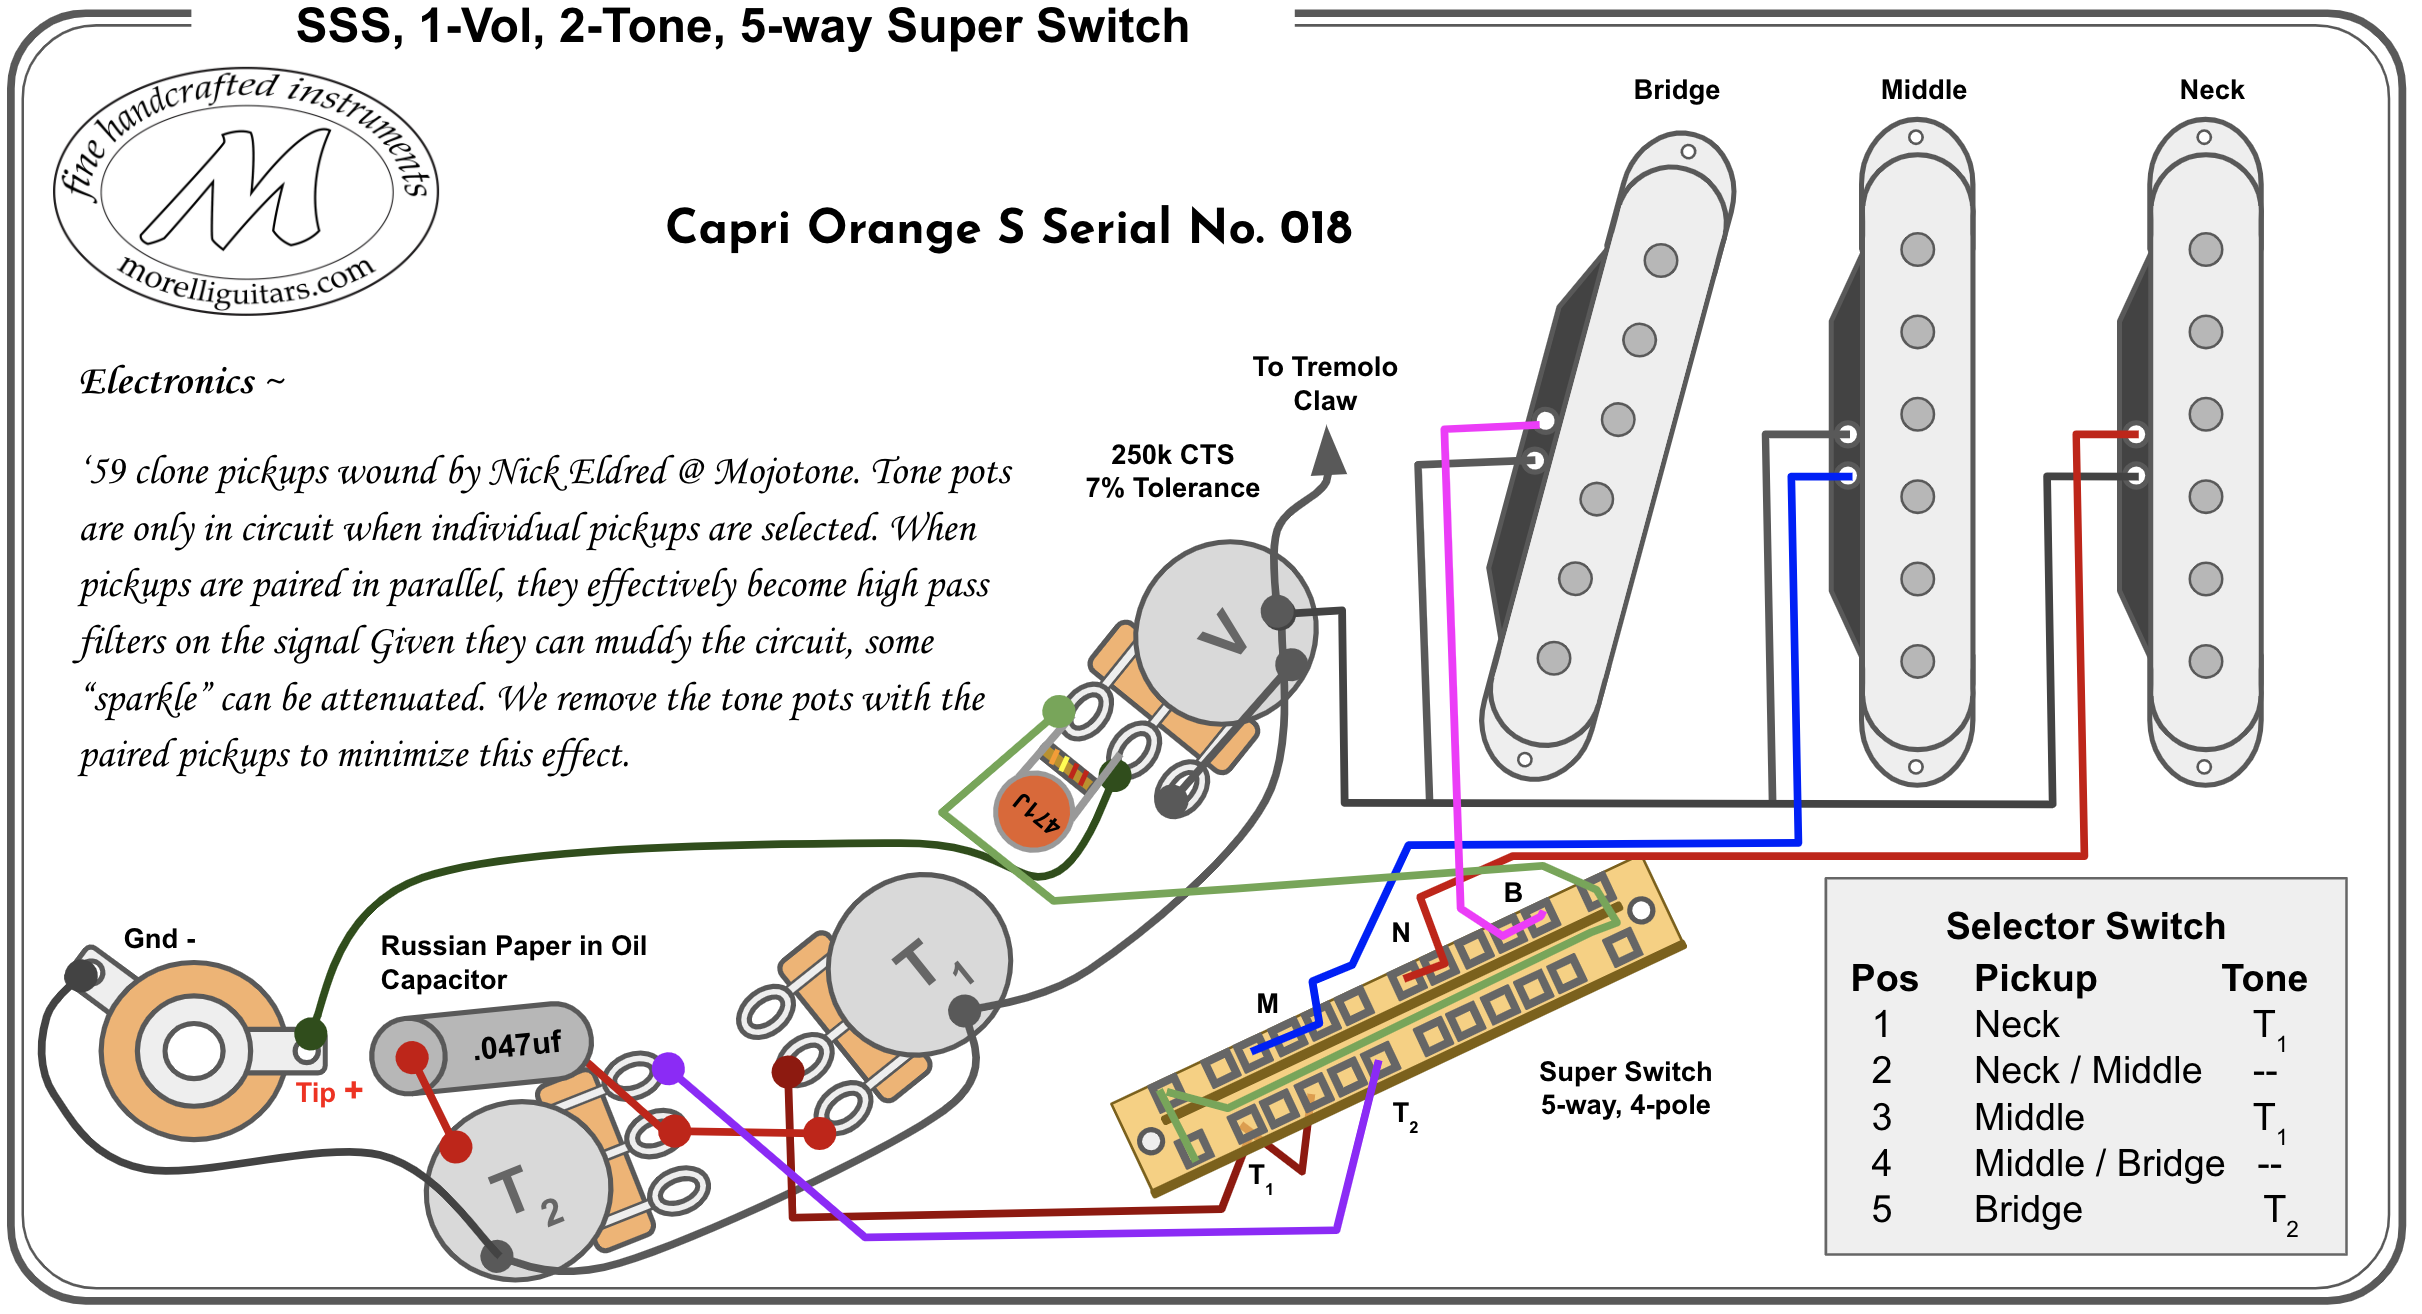 Sss 1 Vol 2 Tone 5 Way Super Switch, Fender 5 Way Super Switch Wiring Diagram